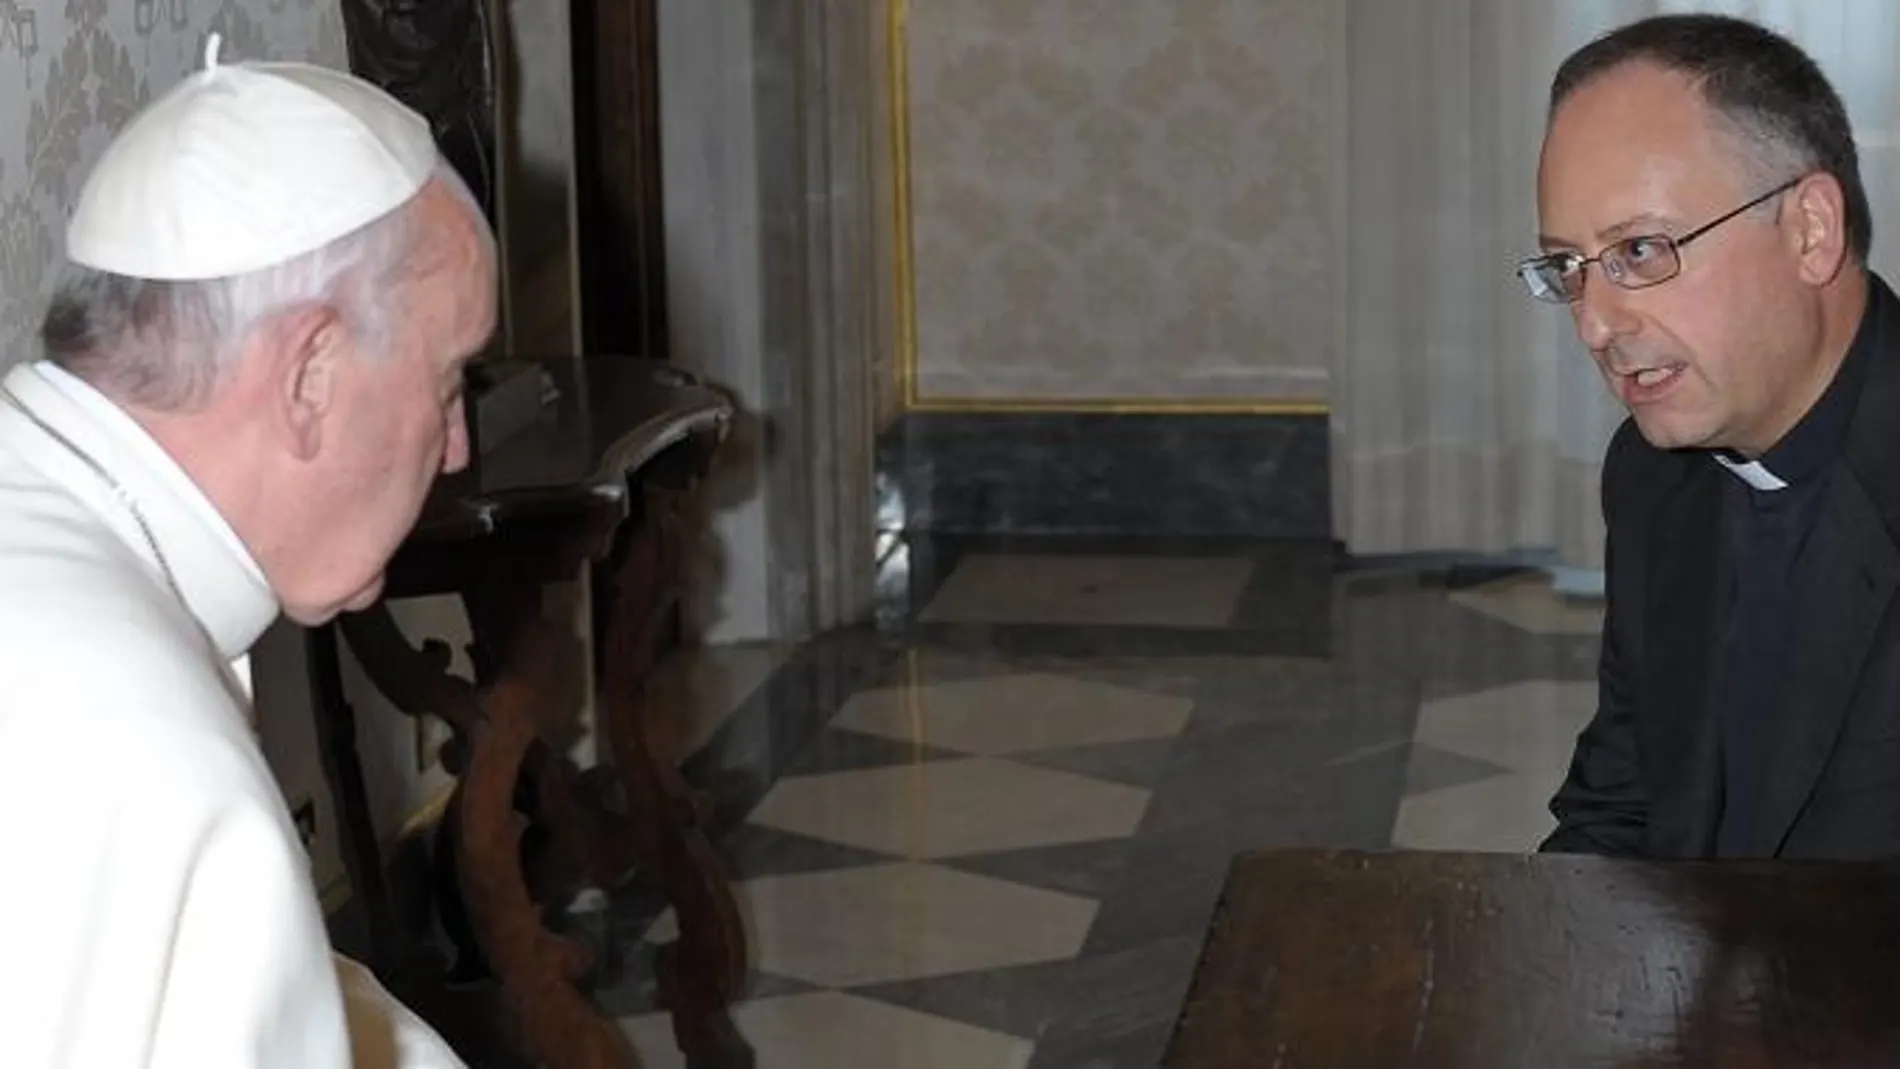 Imágenes del Papa Francisco con el jesuita Antonio Spadaro, director de La Civiltà Cattolica, durante la audiencia que el pontífice concedió a los miembros de esta publicación de los jesuitas el pasado 14 de junio.